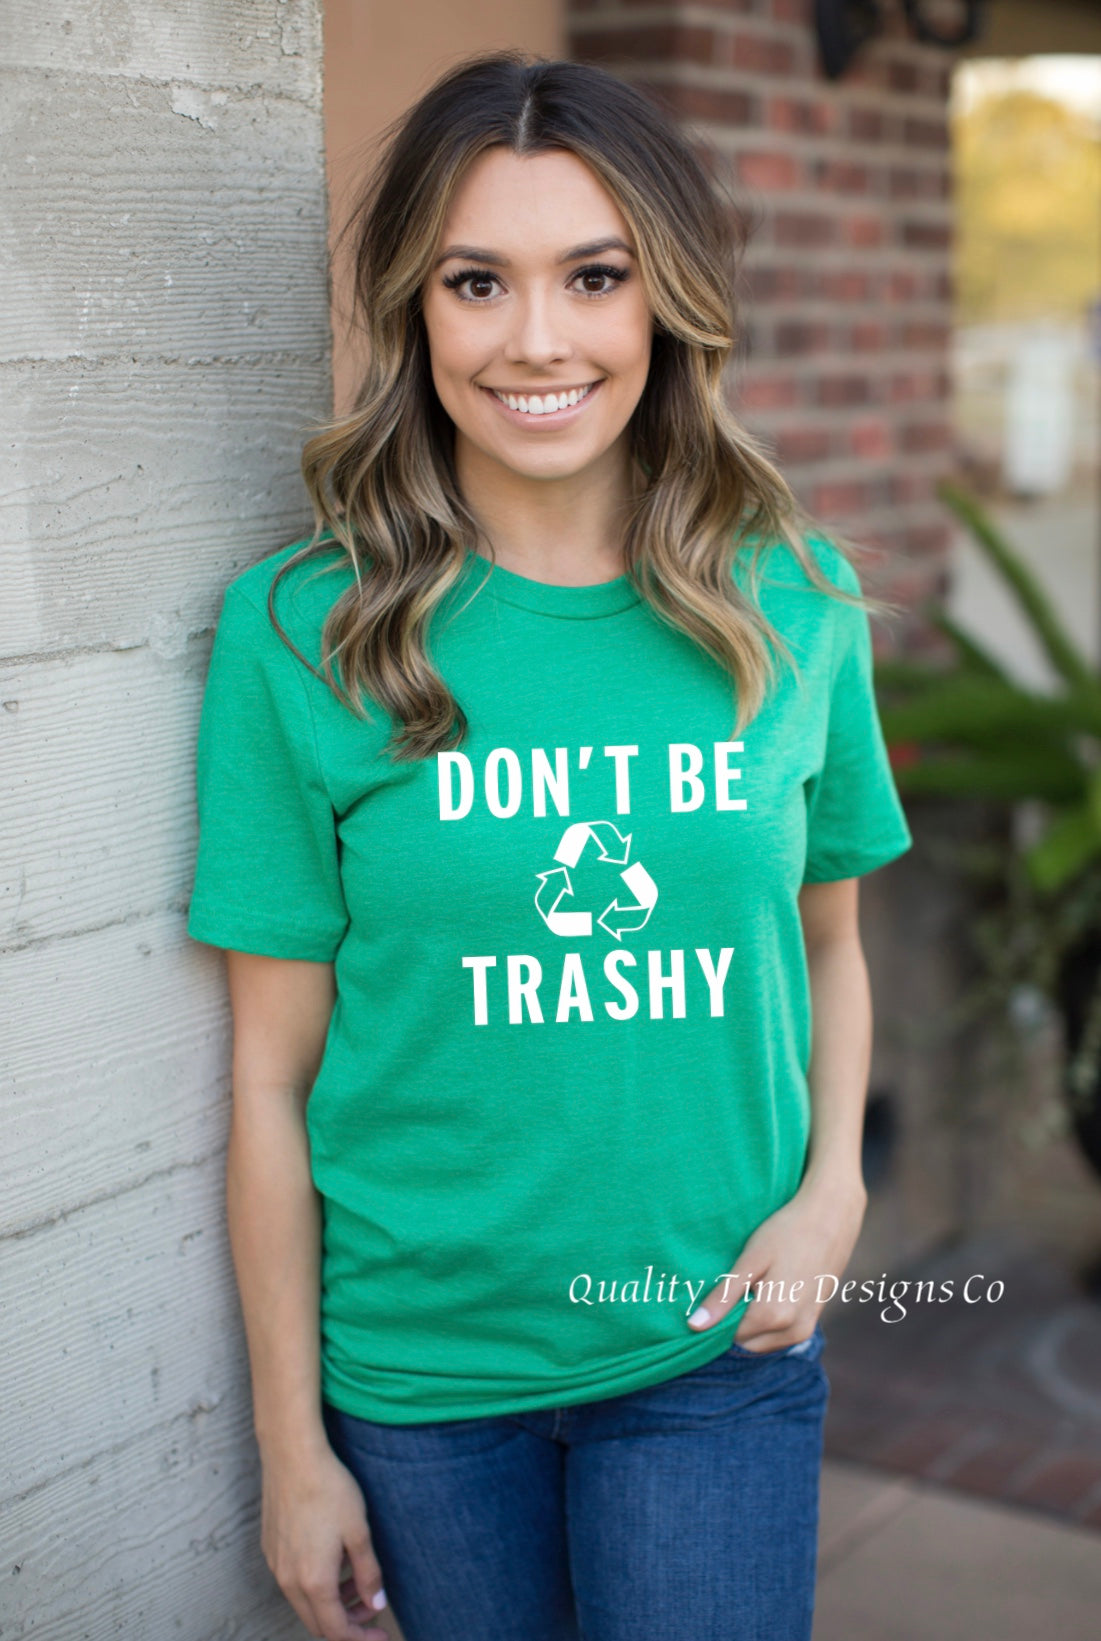 Don’t be trashy Recycling t-shirt 